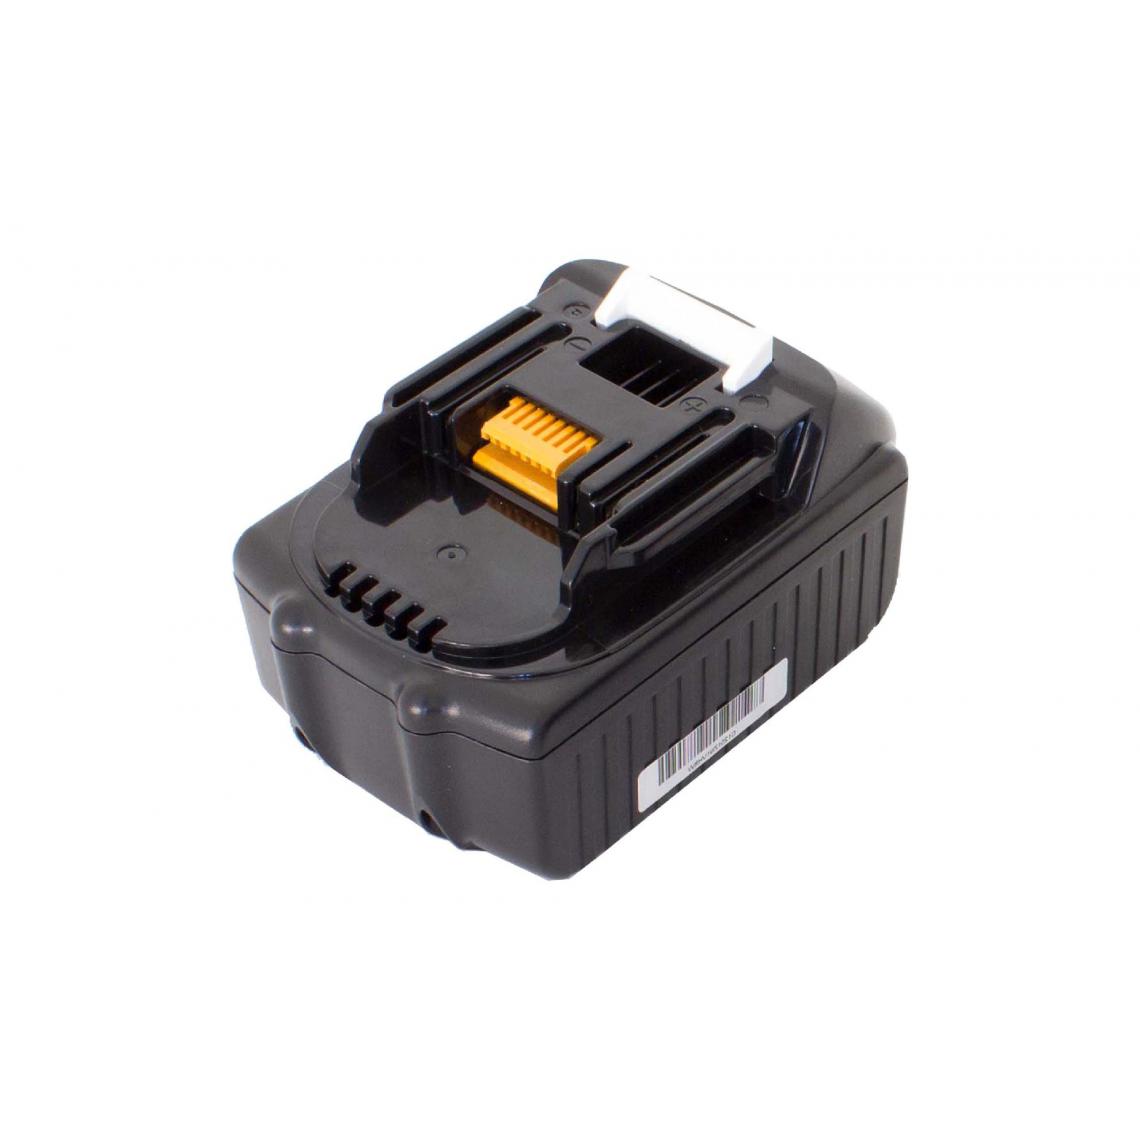 Vhbw - vhbw Batterie compatible avec Makita LXPK01, LXPK01Z, LXPK01Z1, LXRU02, LXSF01, LXSF01Z1 outil électrique (1500 mAh, Li-ion, 18 V) - Accessoires vissage, perçage